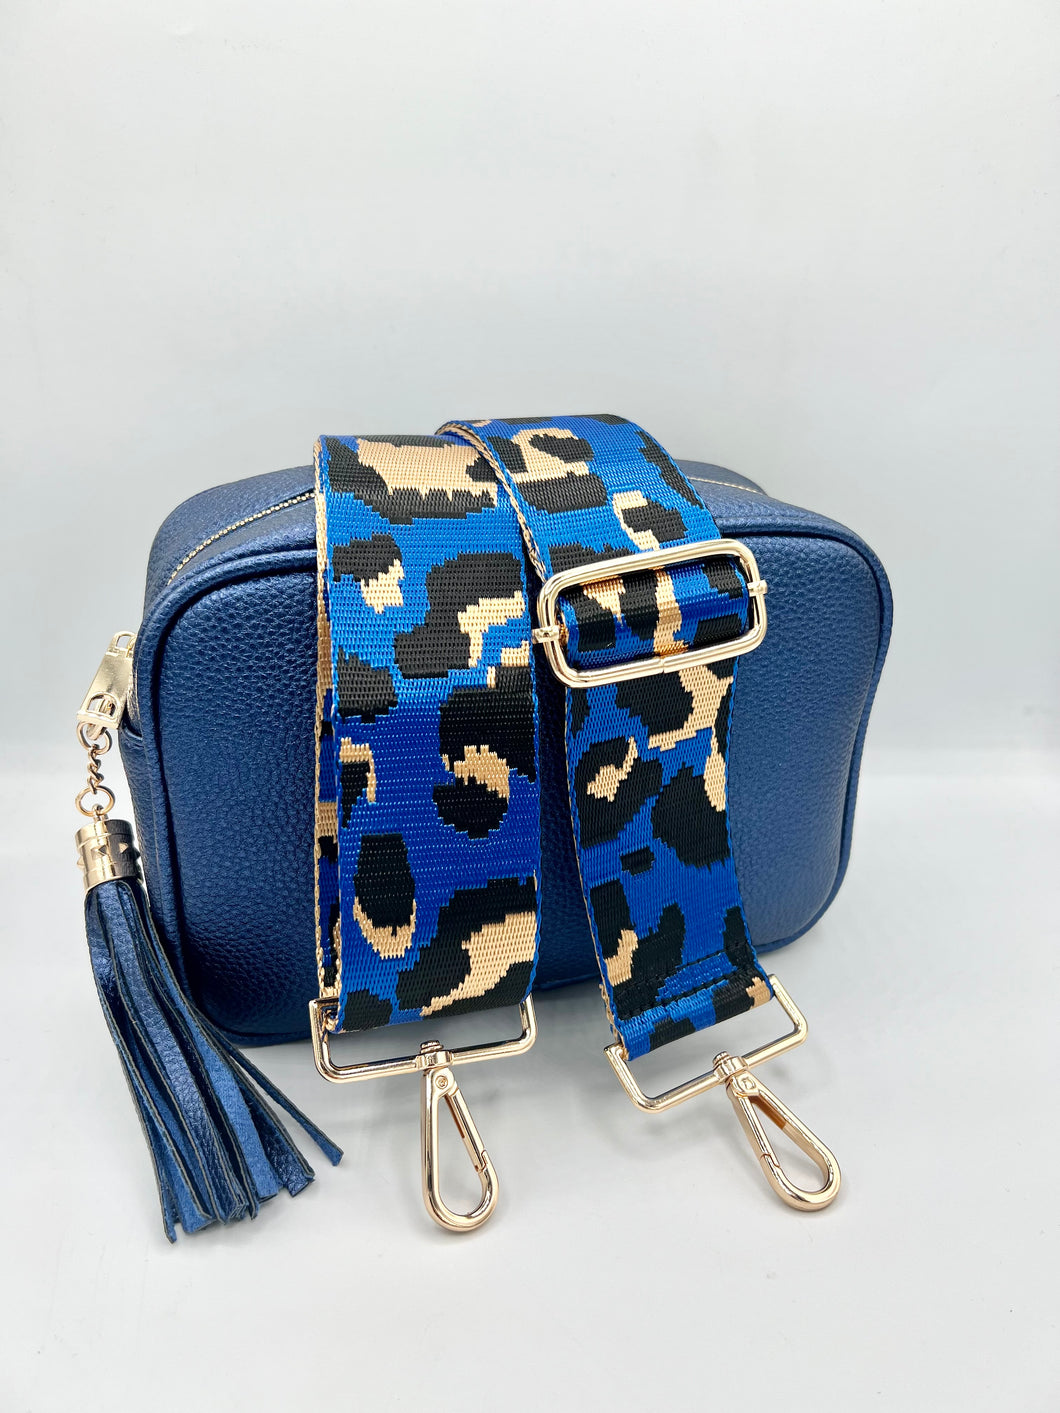 Bag Strap - Royal Blue, Gold & Black Leopard